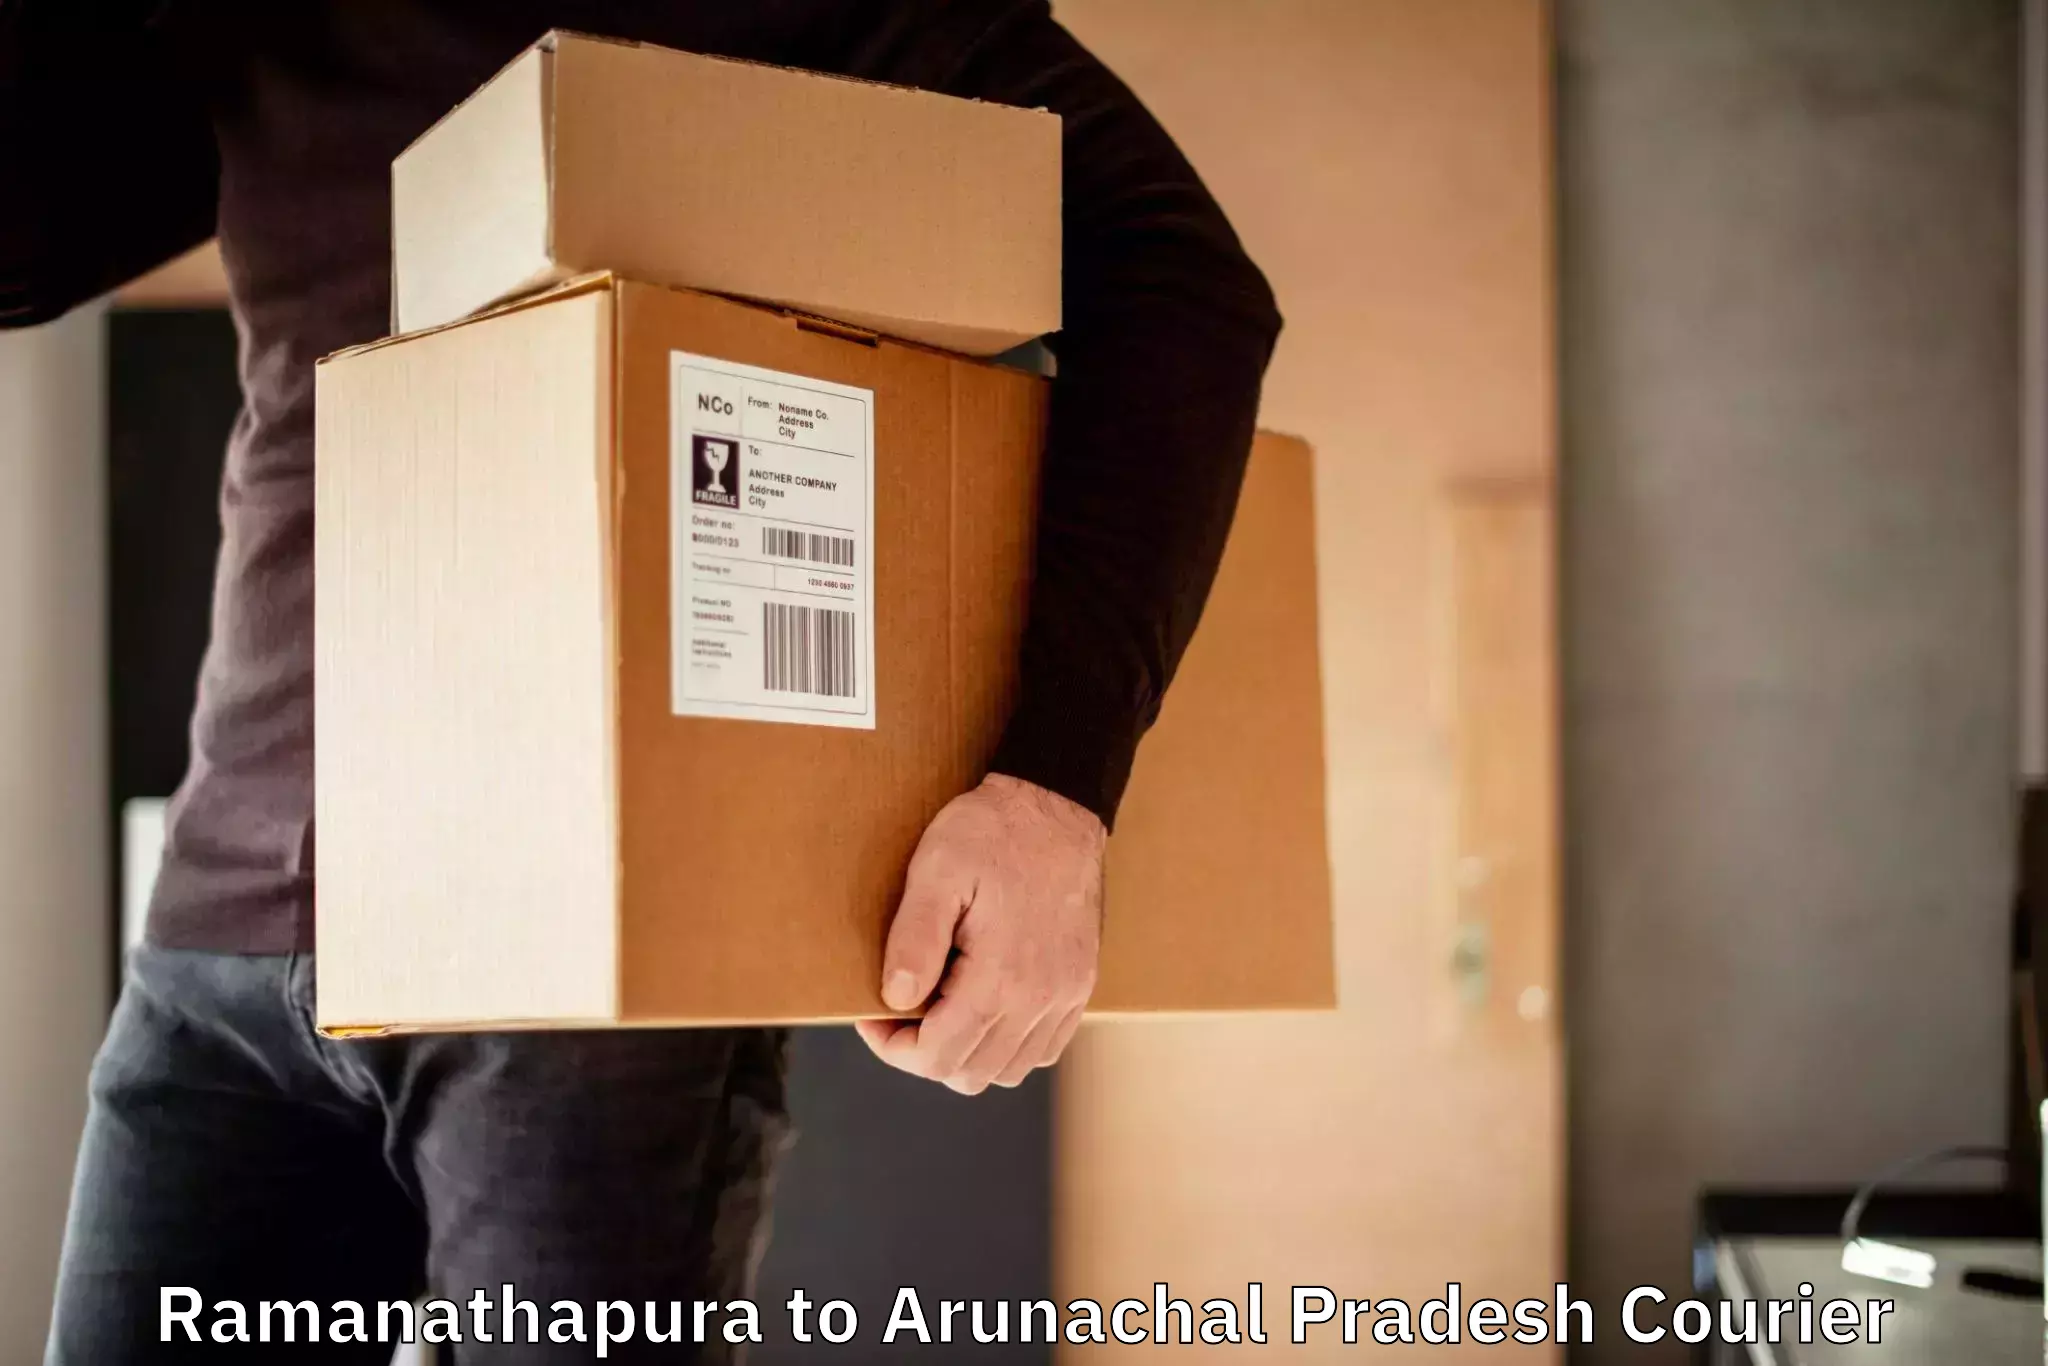 Urgent courier needs in Ramanathapura to Lower Subansiri